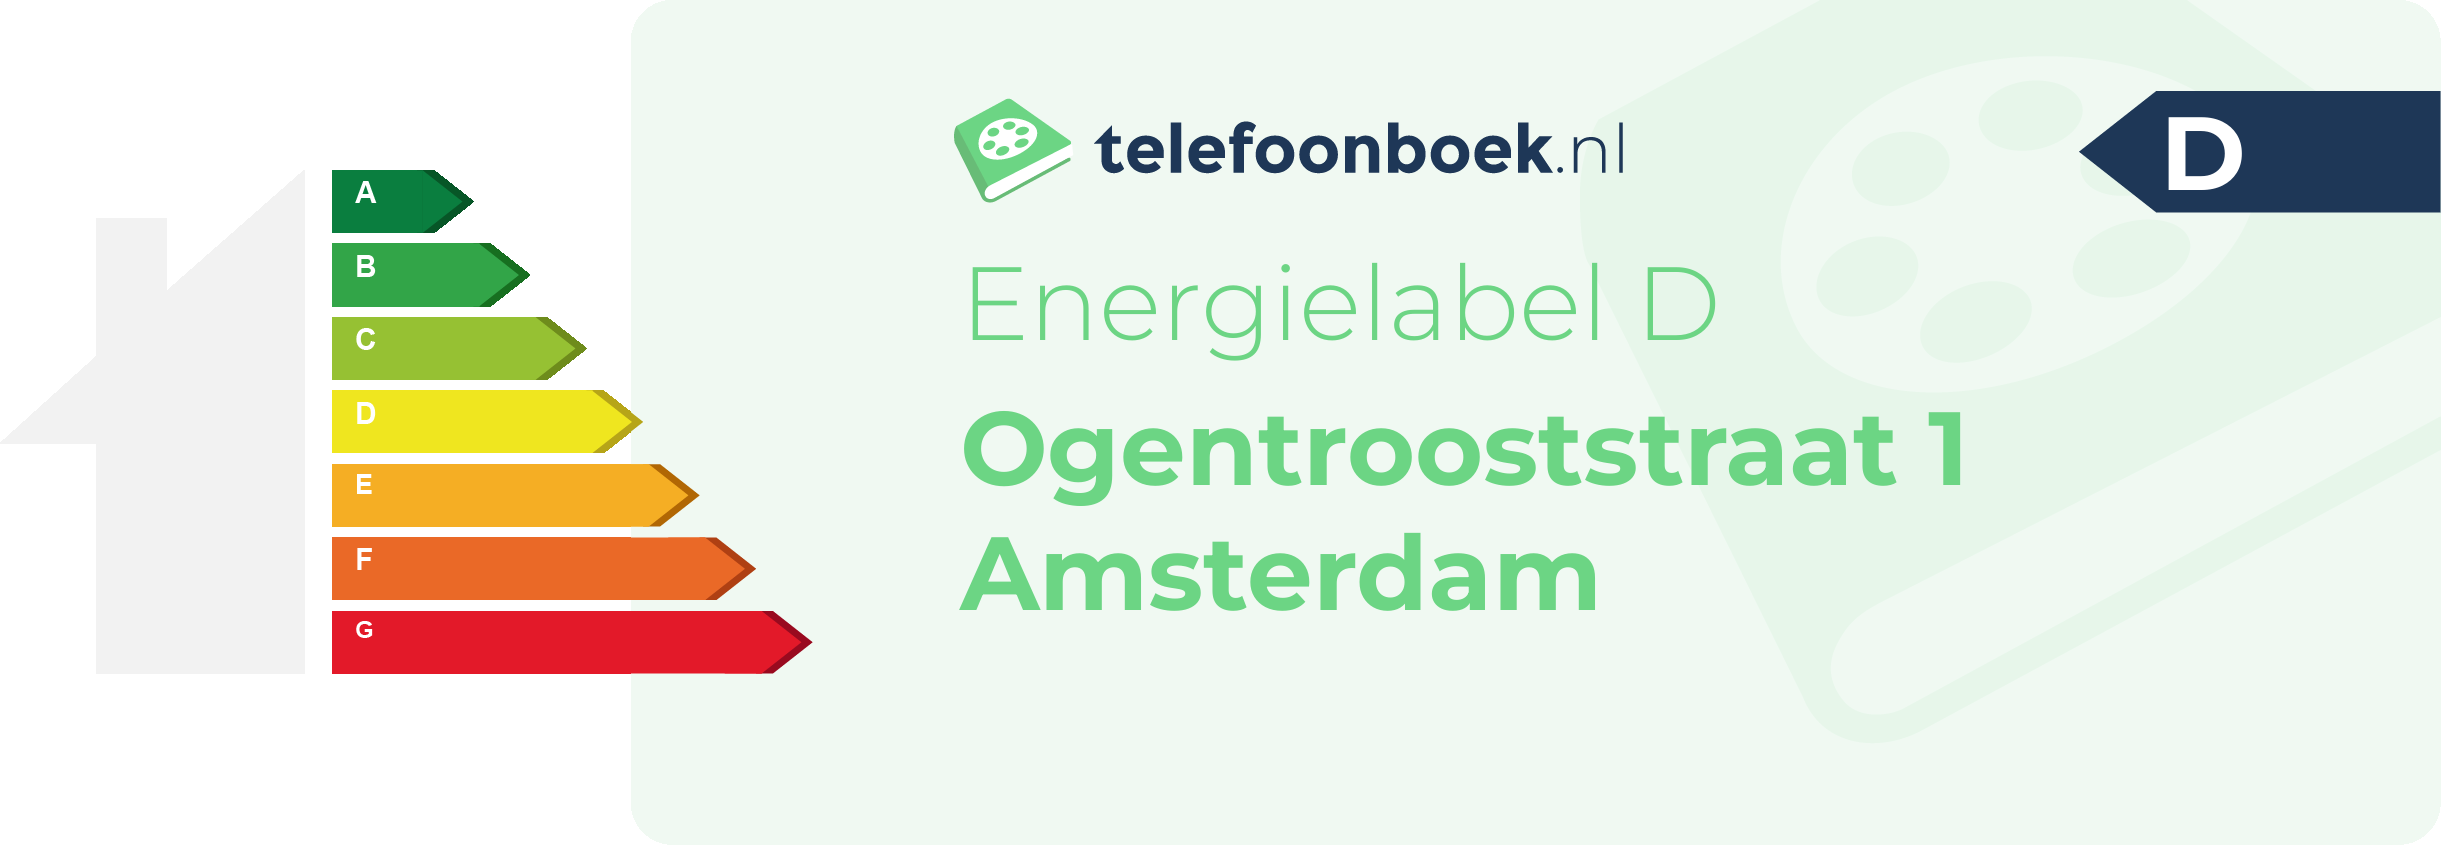 Energielabel Ogentrooststraat 1 Amsterdam